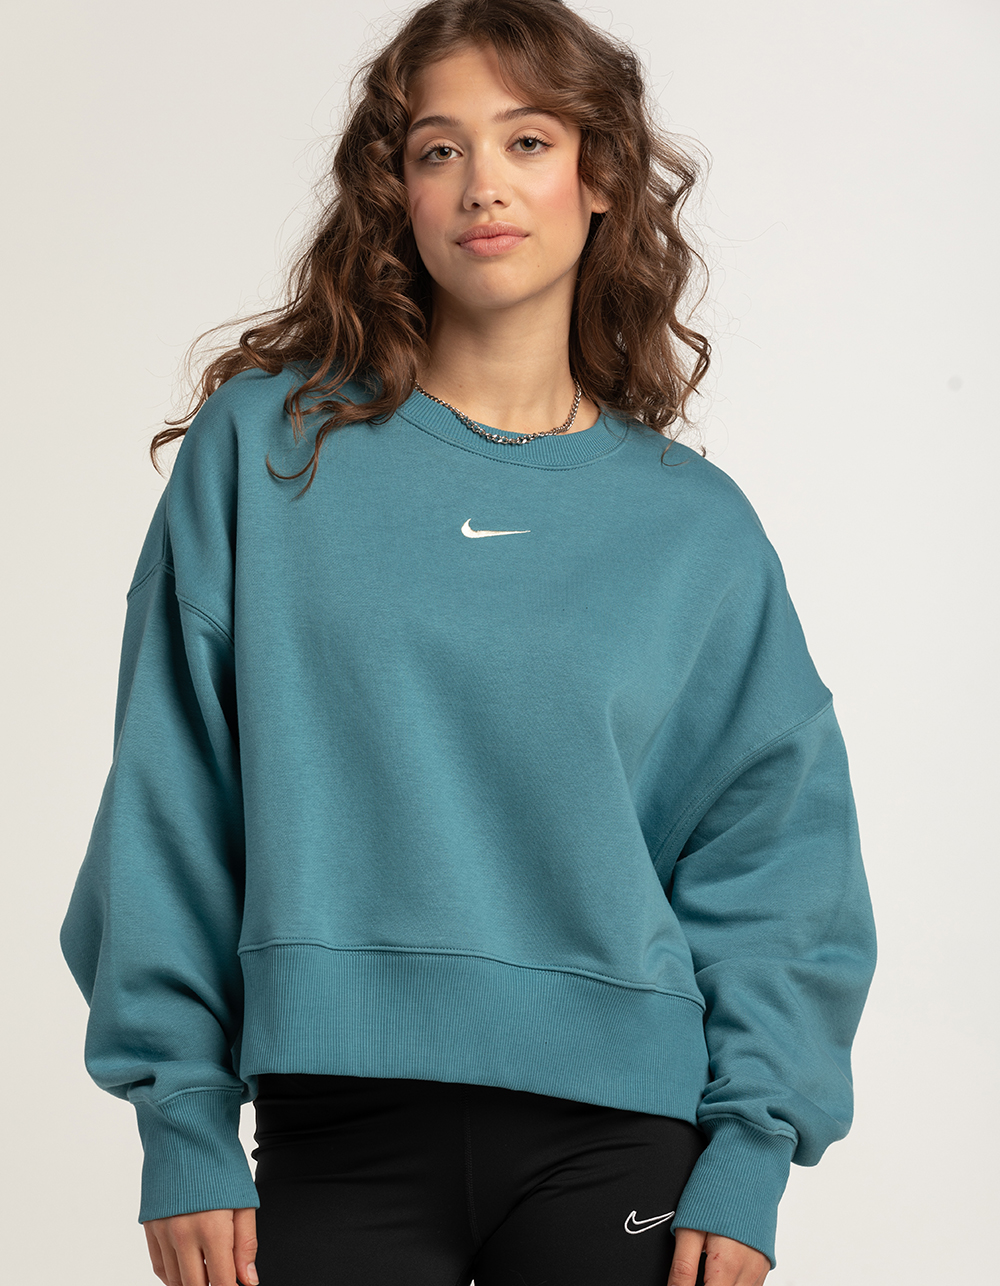 NIKE Sportswear Phoenix Womens Oversized Sweatshirt TEAL Tillys